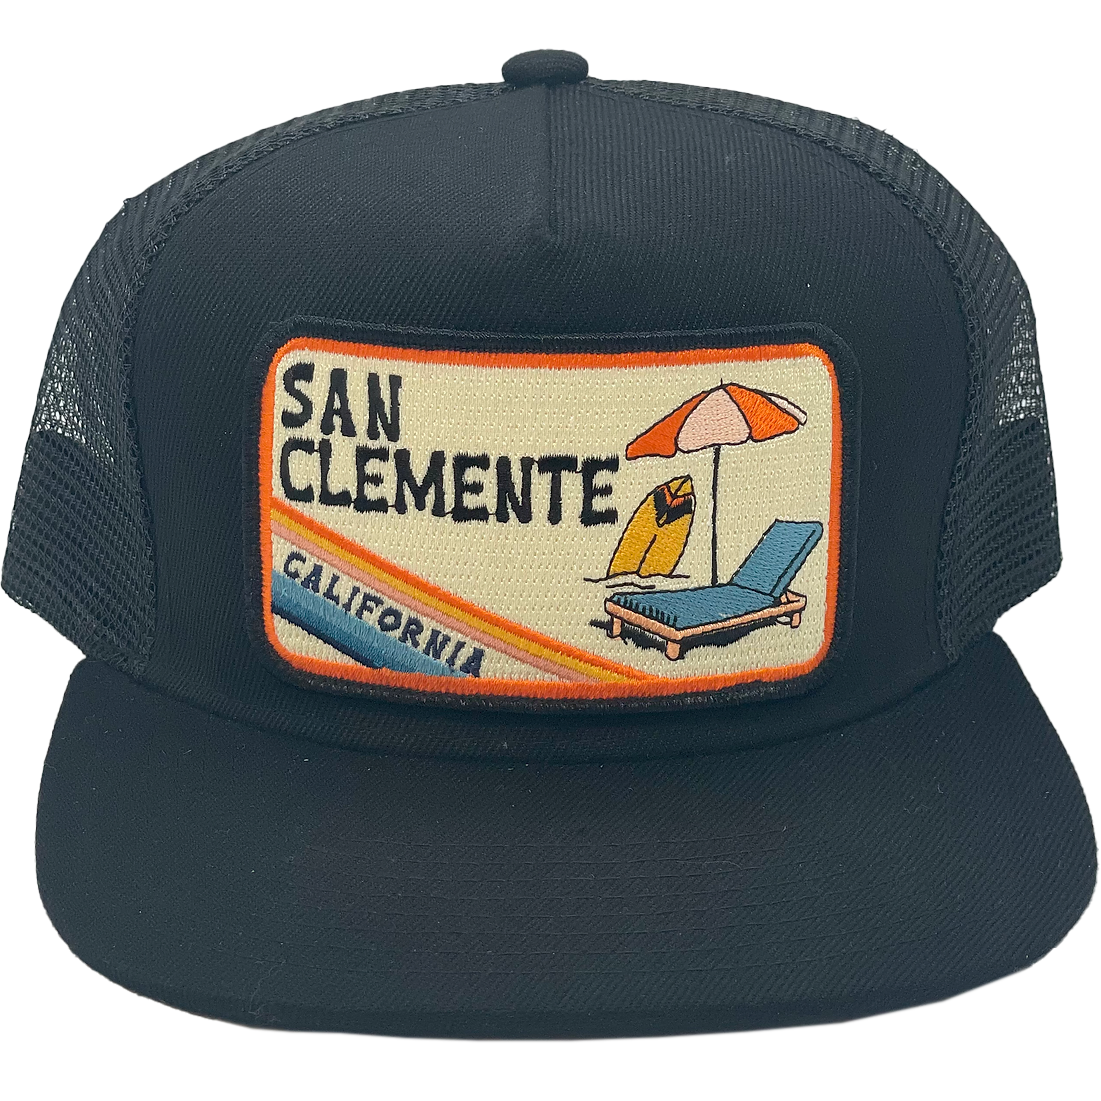 San Clemente Trucker alternate view